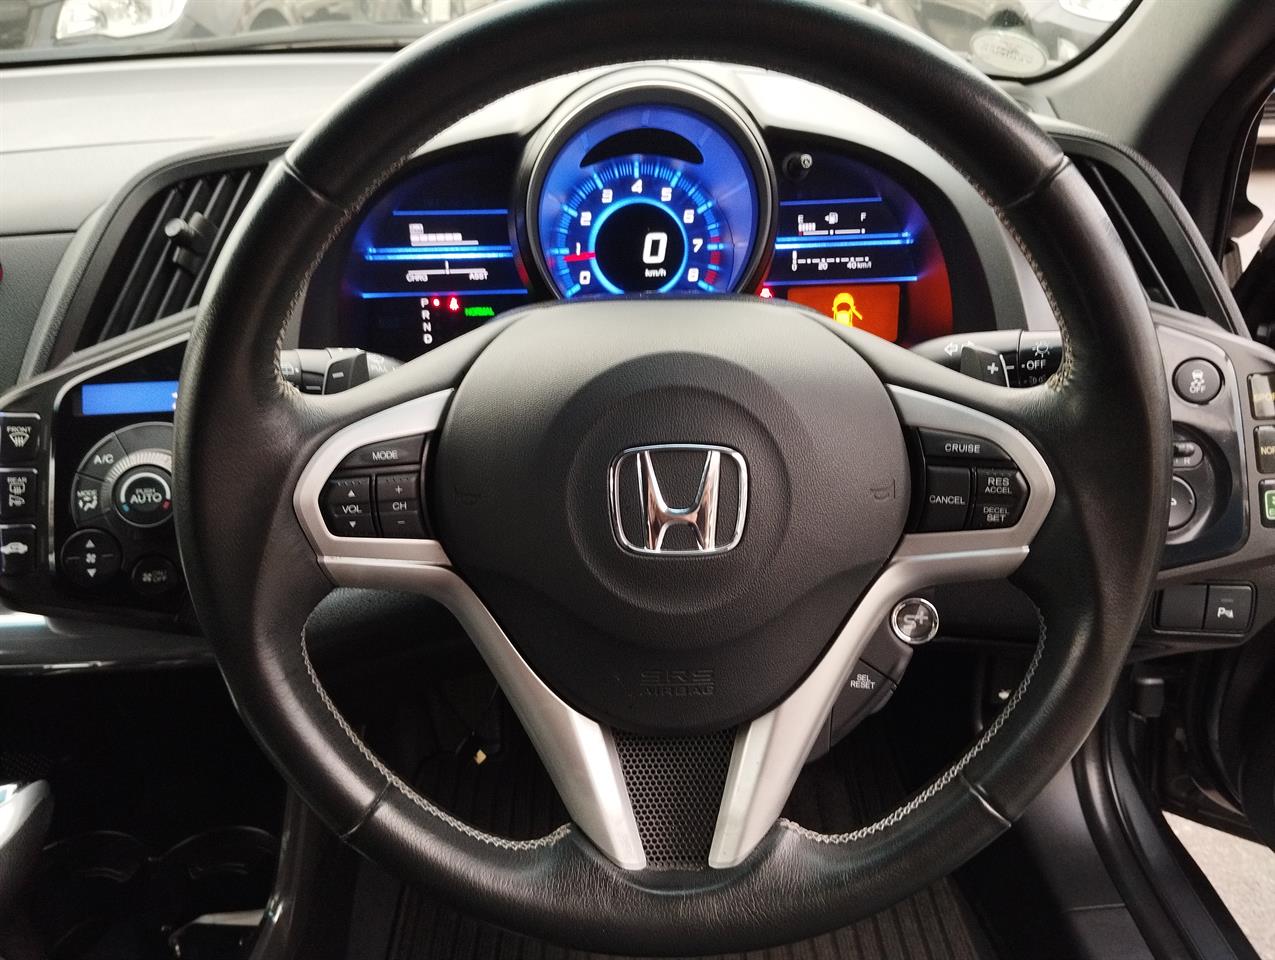 2014 Honda CR-Z